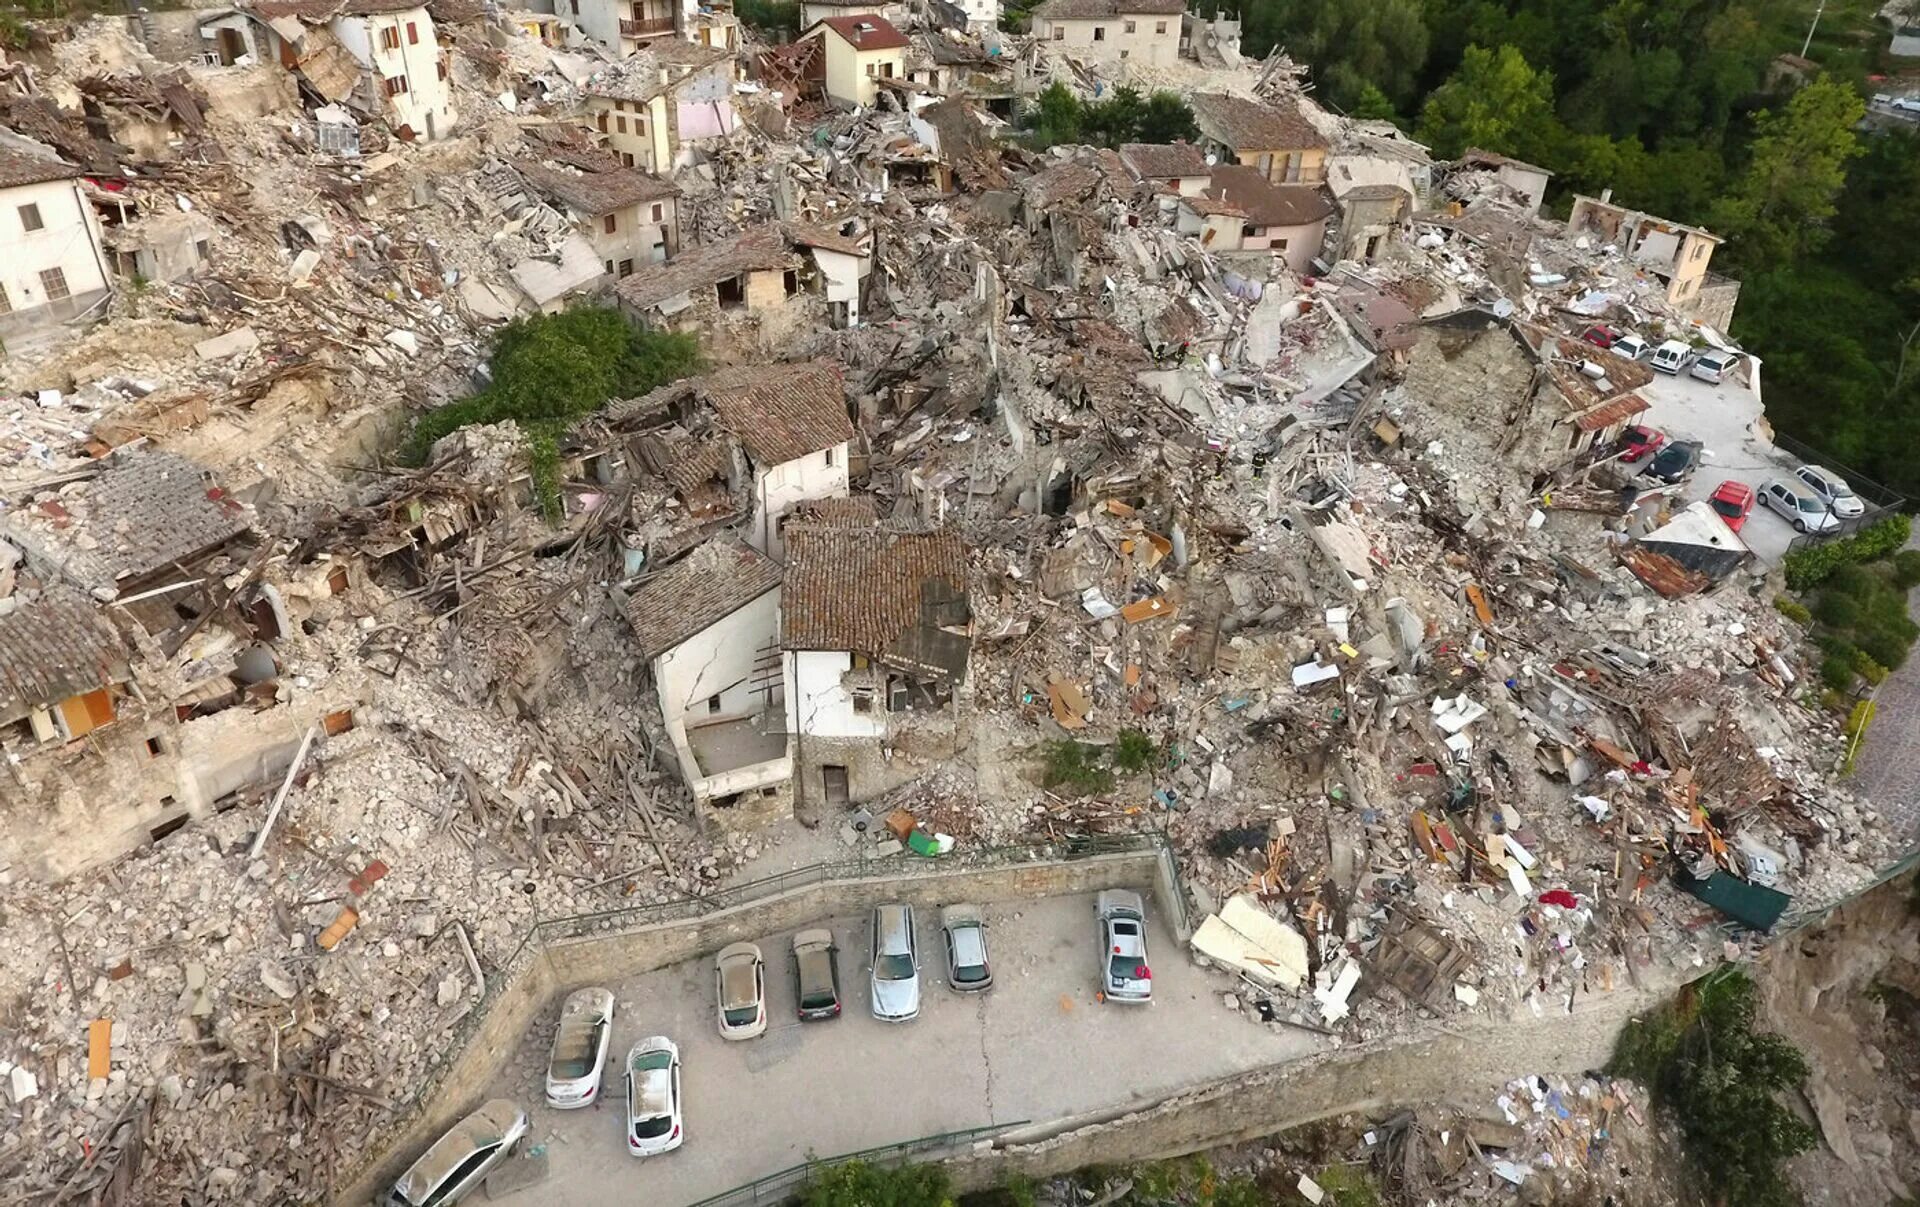 Фотографии землетрясений. Землетрясение в Италии 2016. Пескара дель Тронто. Разрушение от землетрясения. Землетрясение в городе.